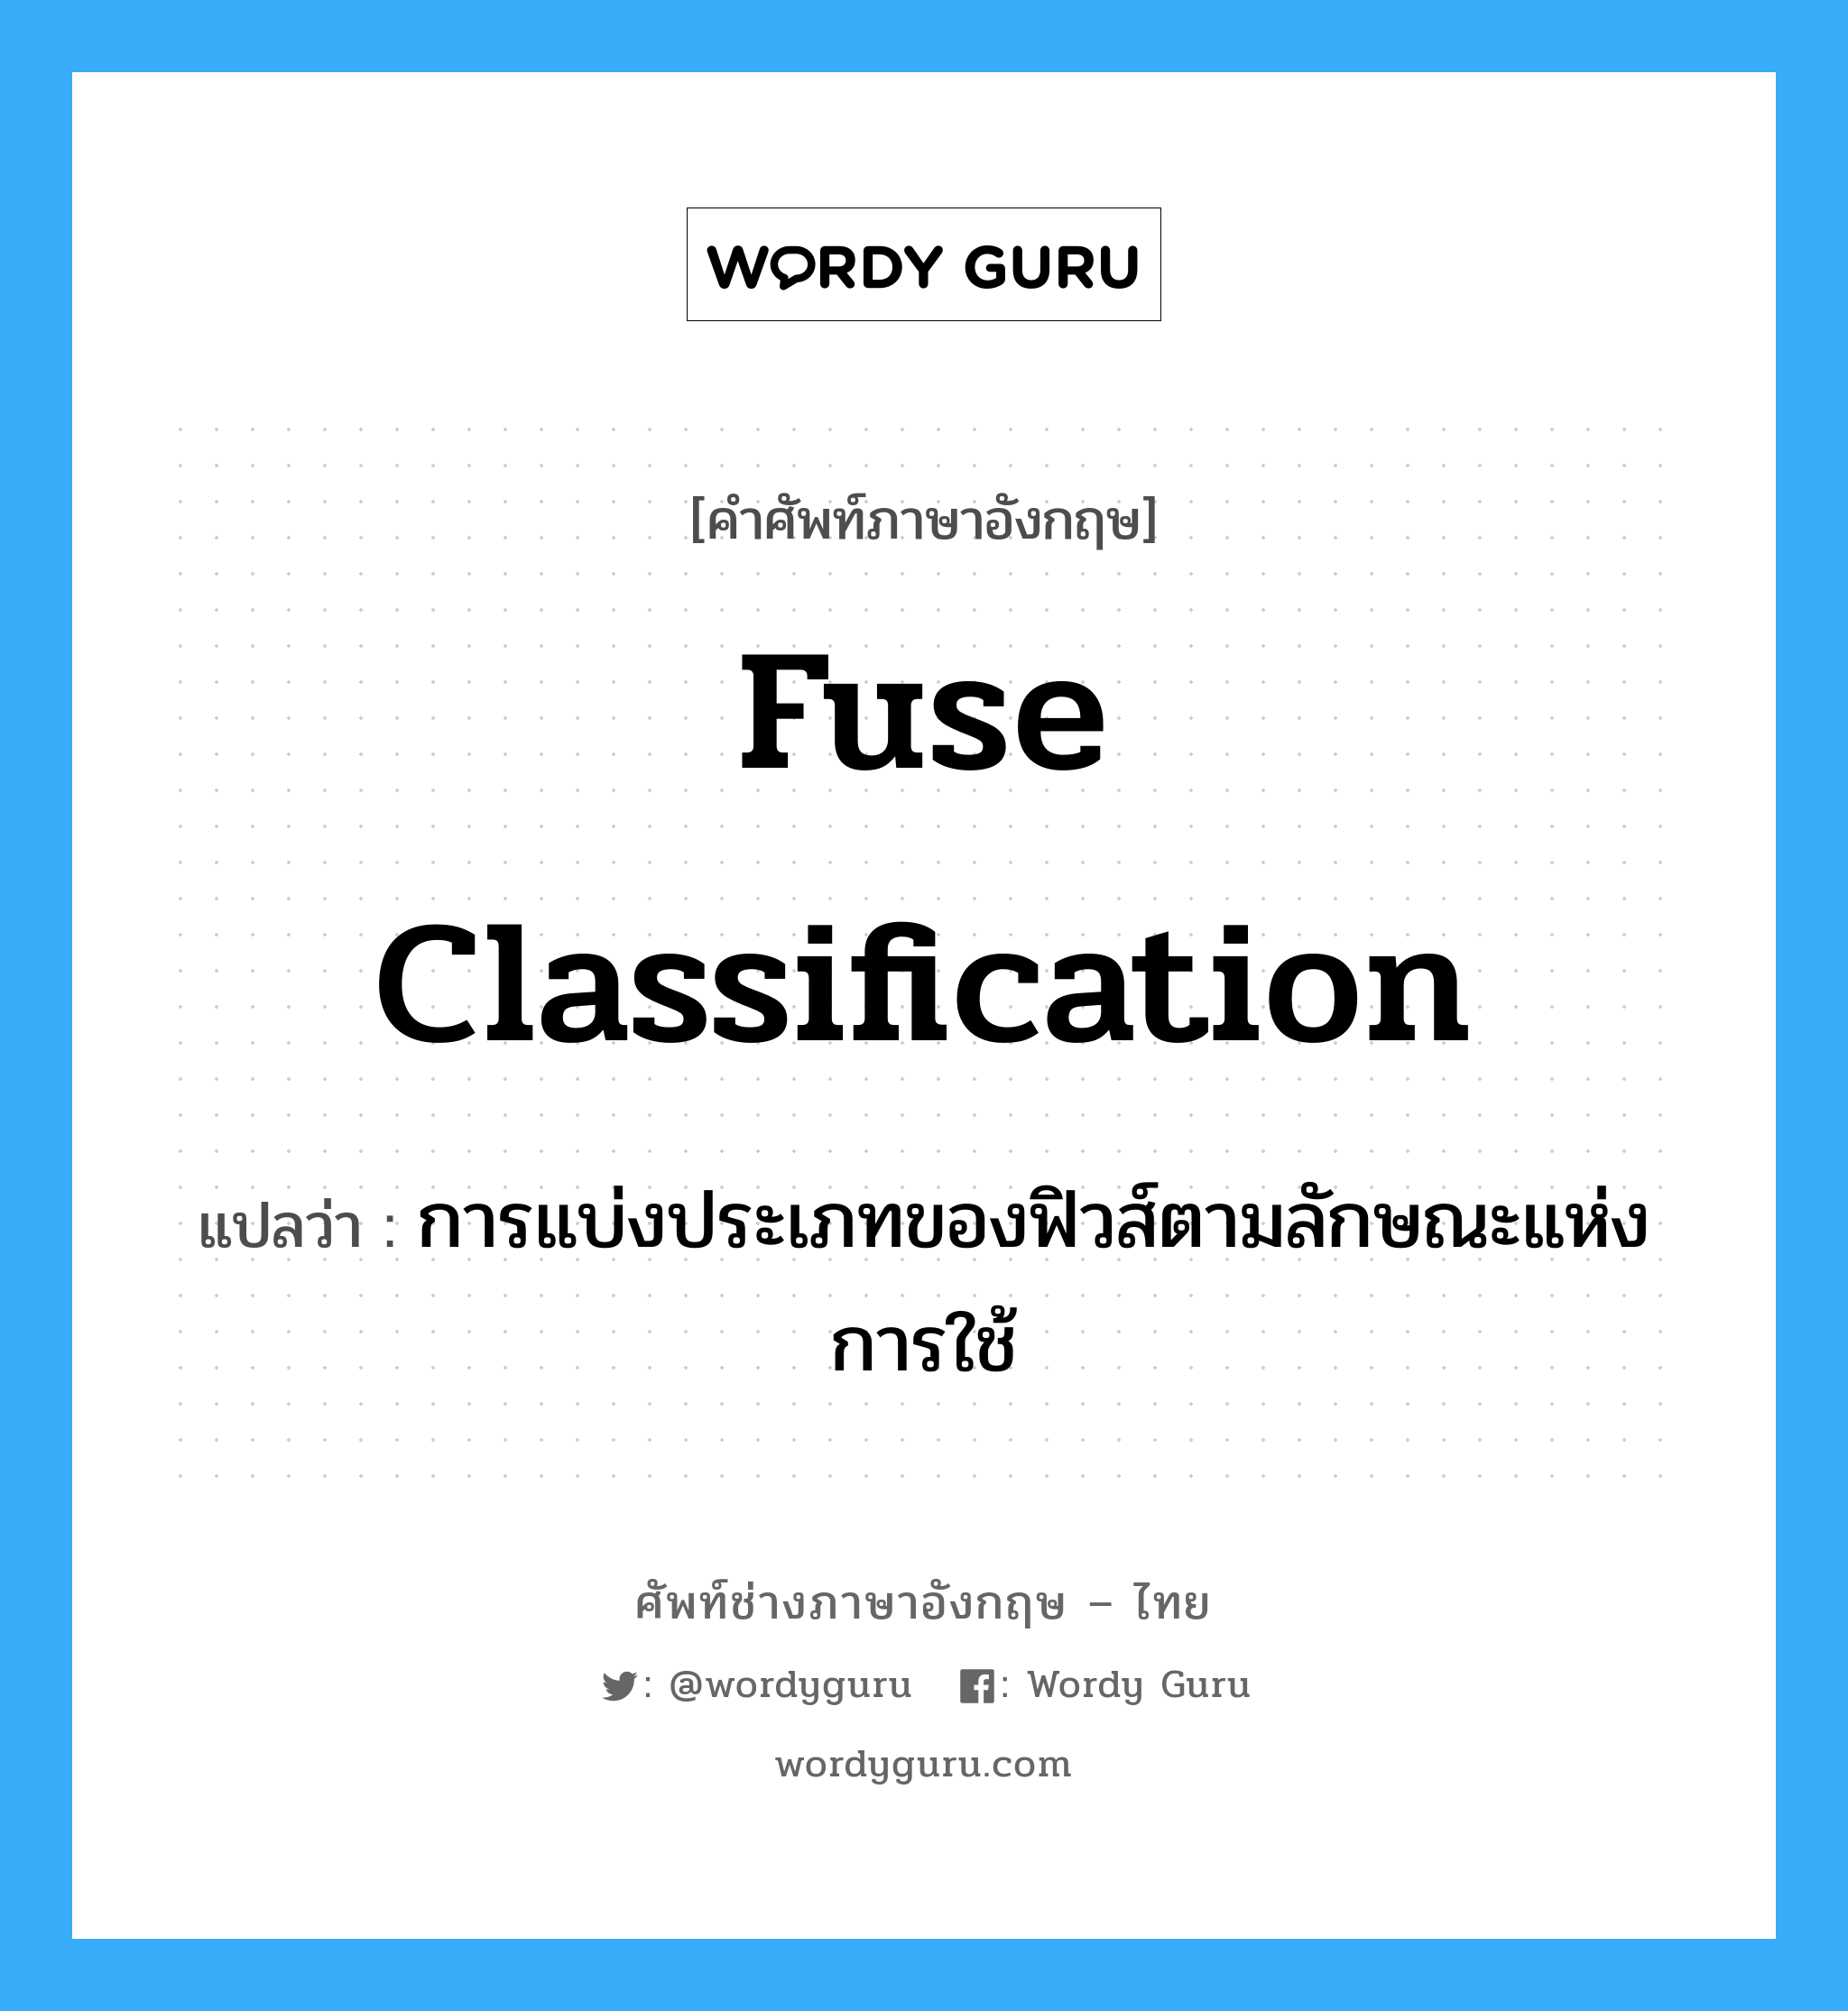 fuse classification แปลว่า?, คำศัพท์ช่างภาษาอังกฤษ - ไทย fuse classification คำศัพท์ภาษาอังกฤษ fuse classification แปลว่า การแบ่งประเภทของฟิวส์ตามลักษณะแห่งการใช้